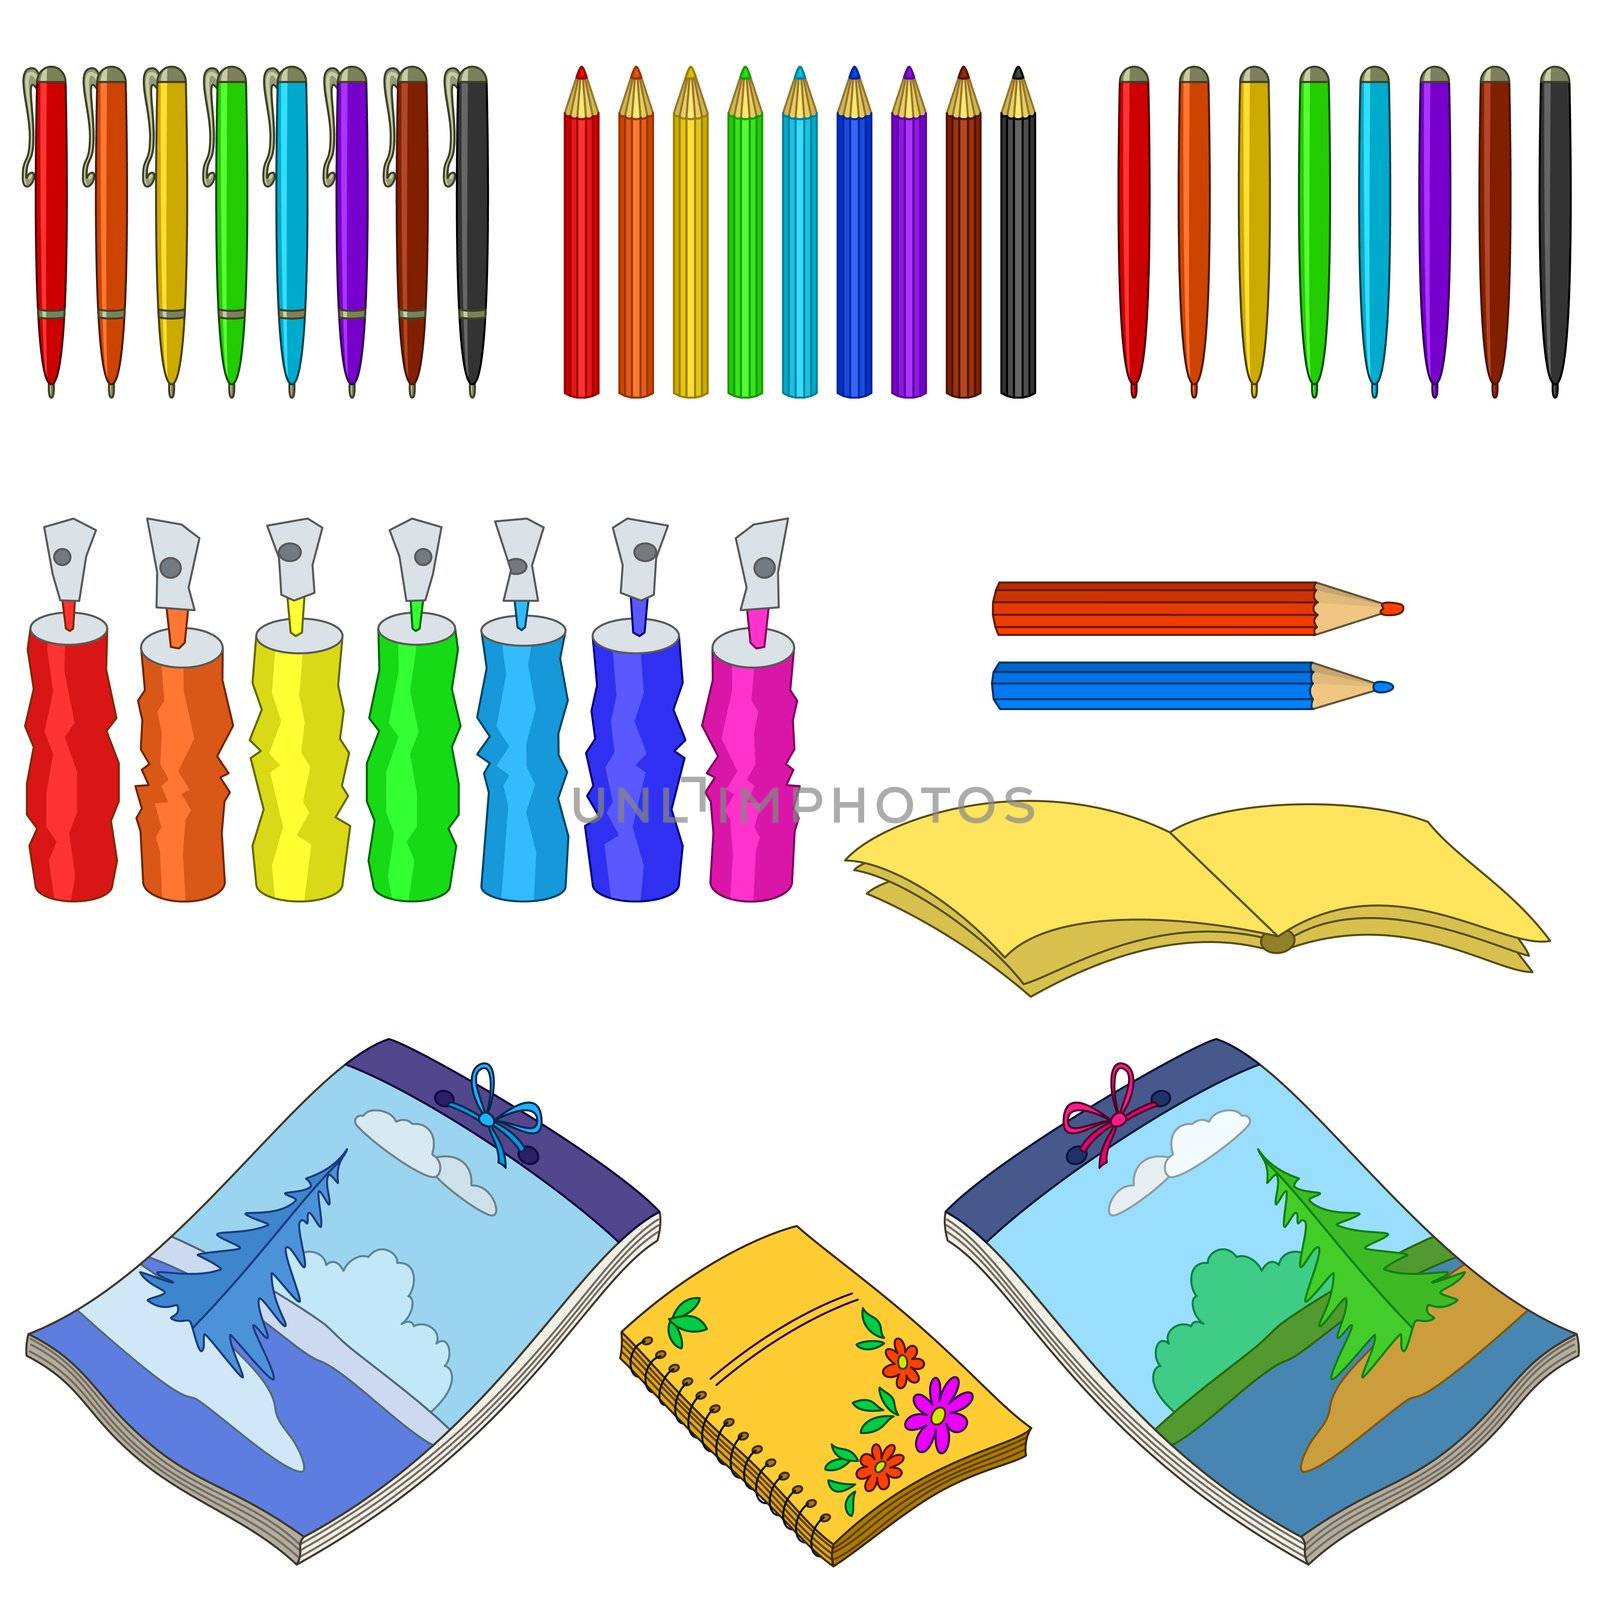 Art tools, set: notebooks, aerosol cans, pencils and pens